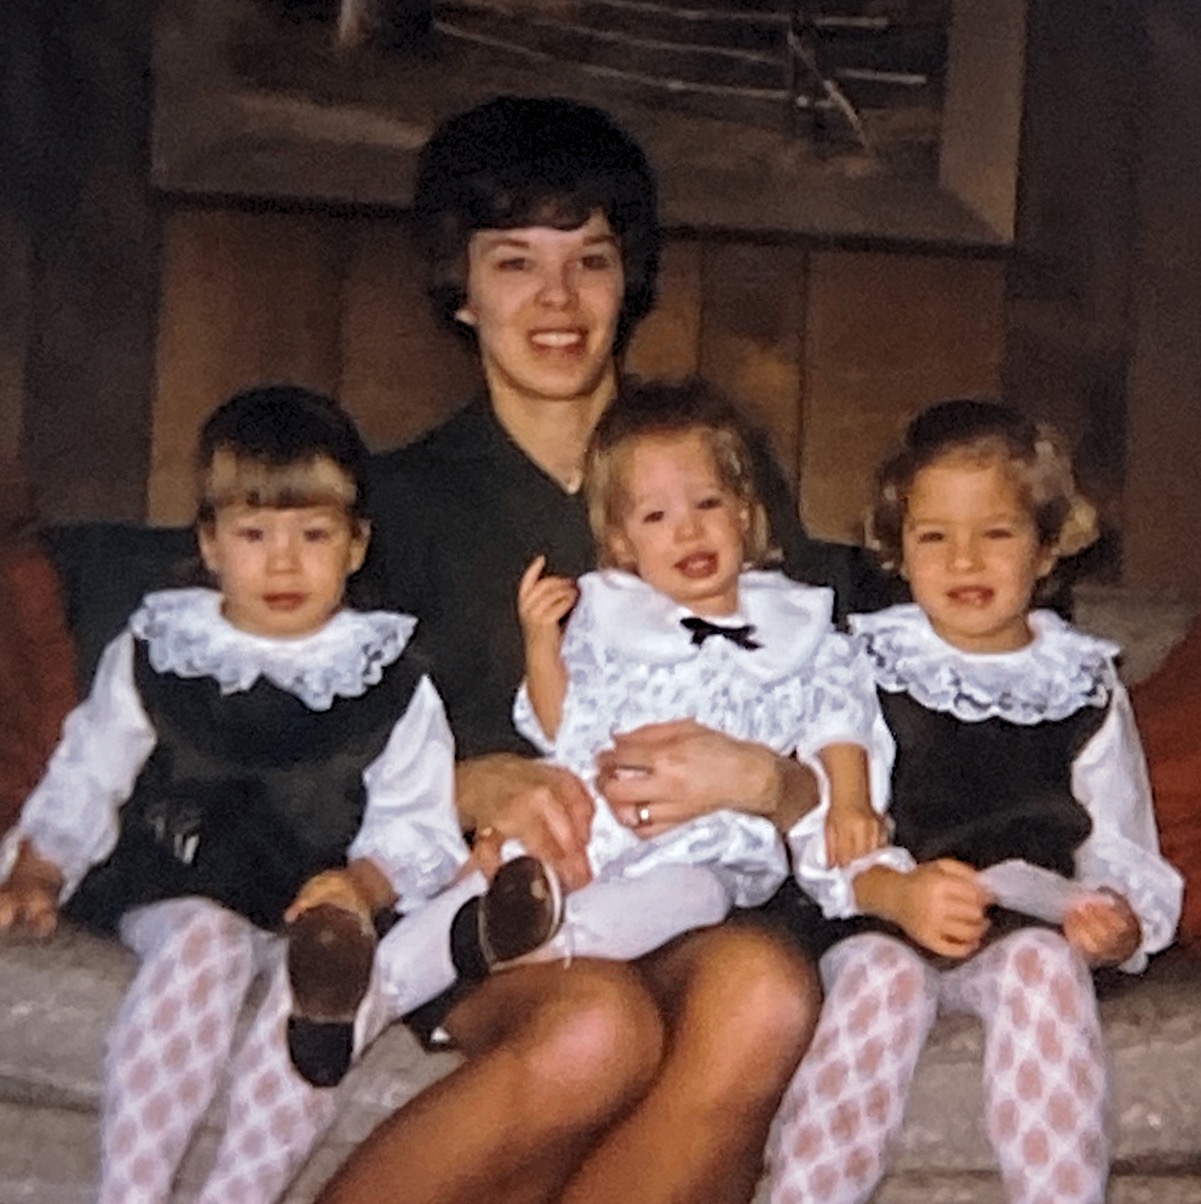 Gran and kids 1967